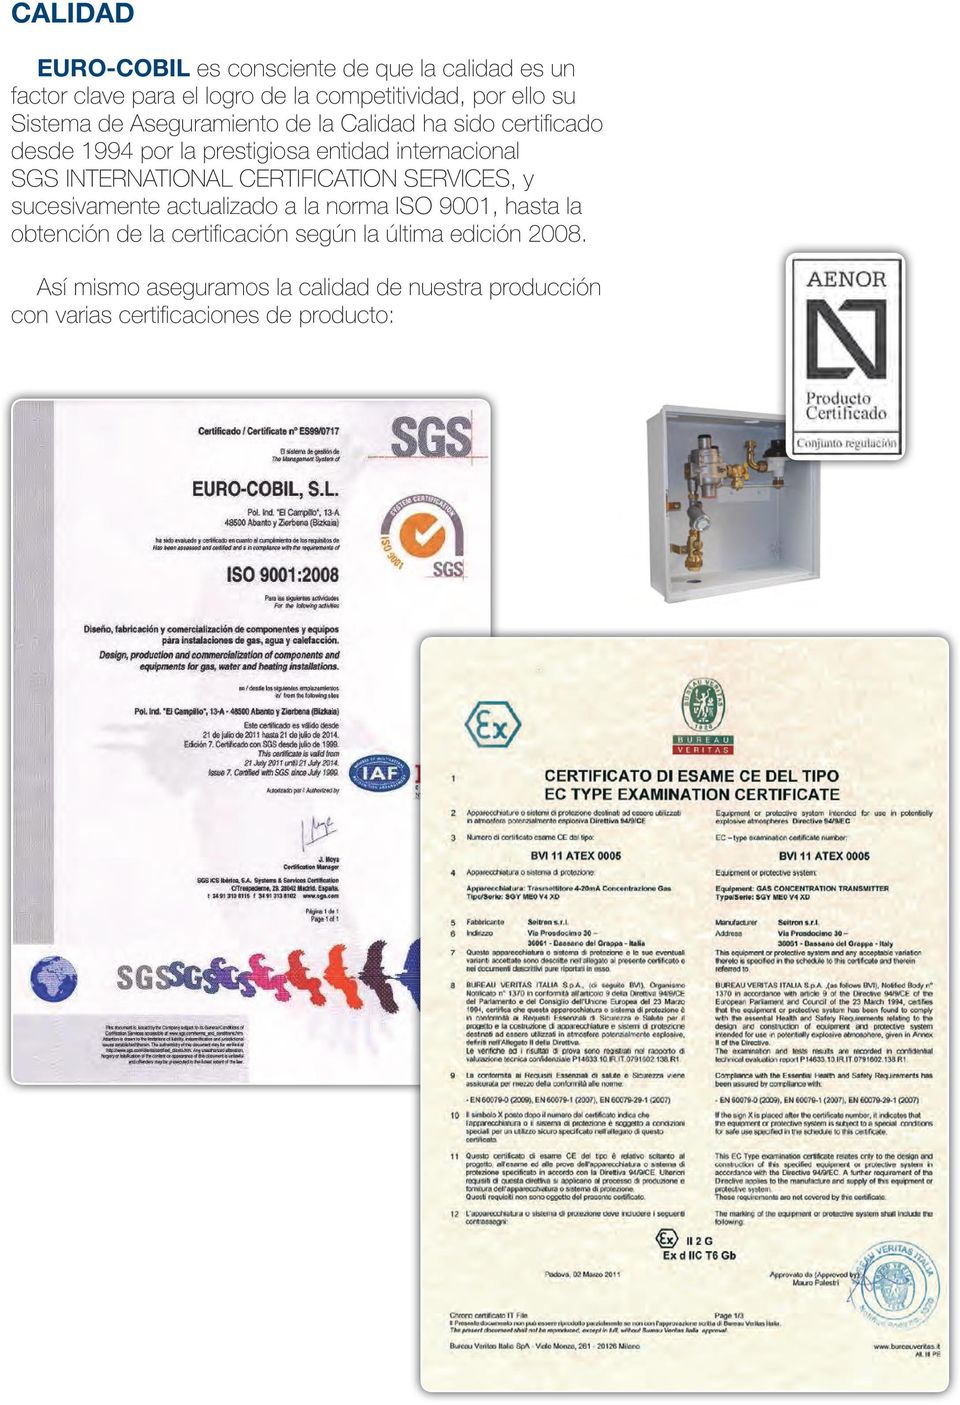 INTERNATIONAL CERTIFICATION SERVICES, y sucesivamente actualizado a la norma ISO 9001, hasta la obtención de la